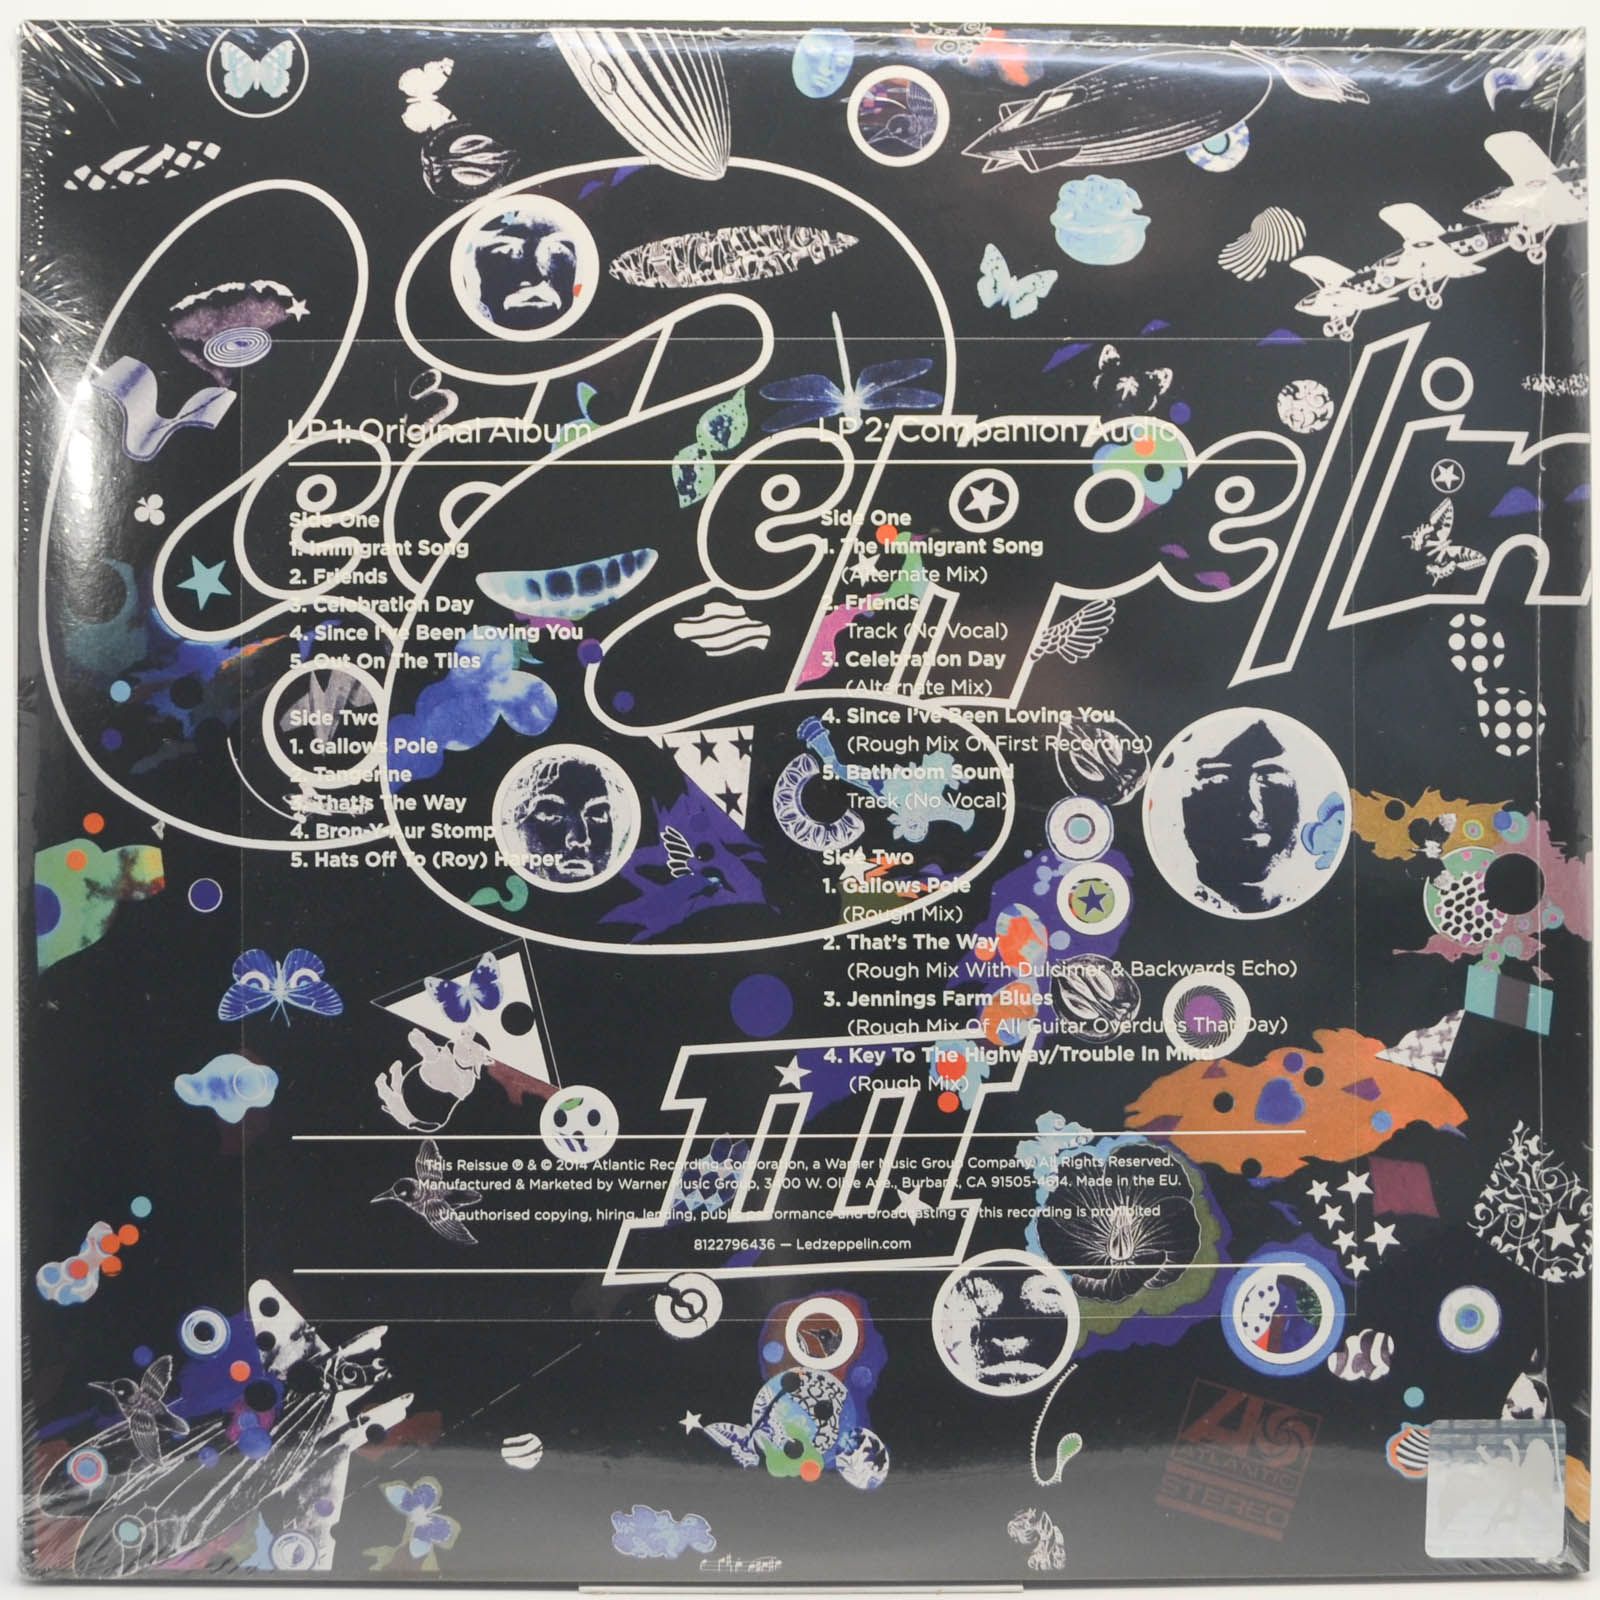 Led Zeppelin — Led Zeppelin III (2LP), 1970